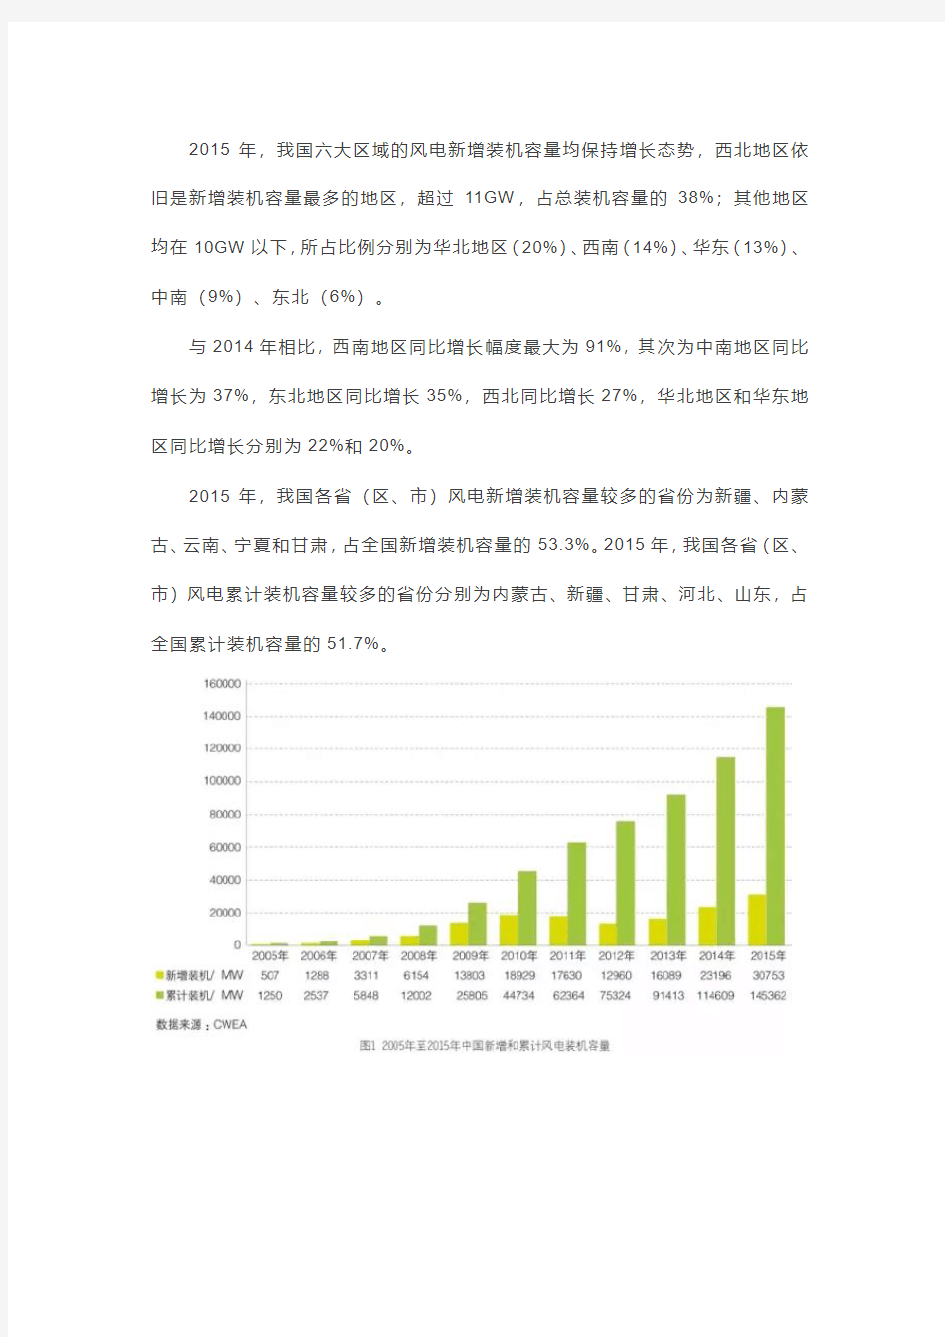 2015年中国风电装机容量统计简报